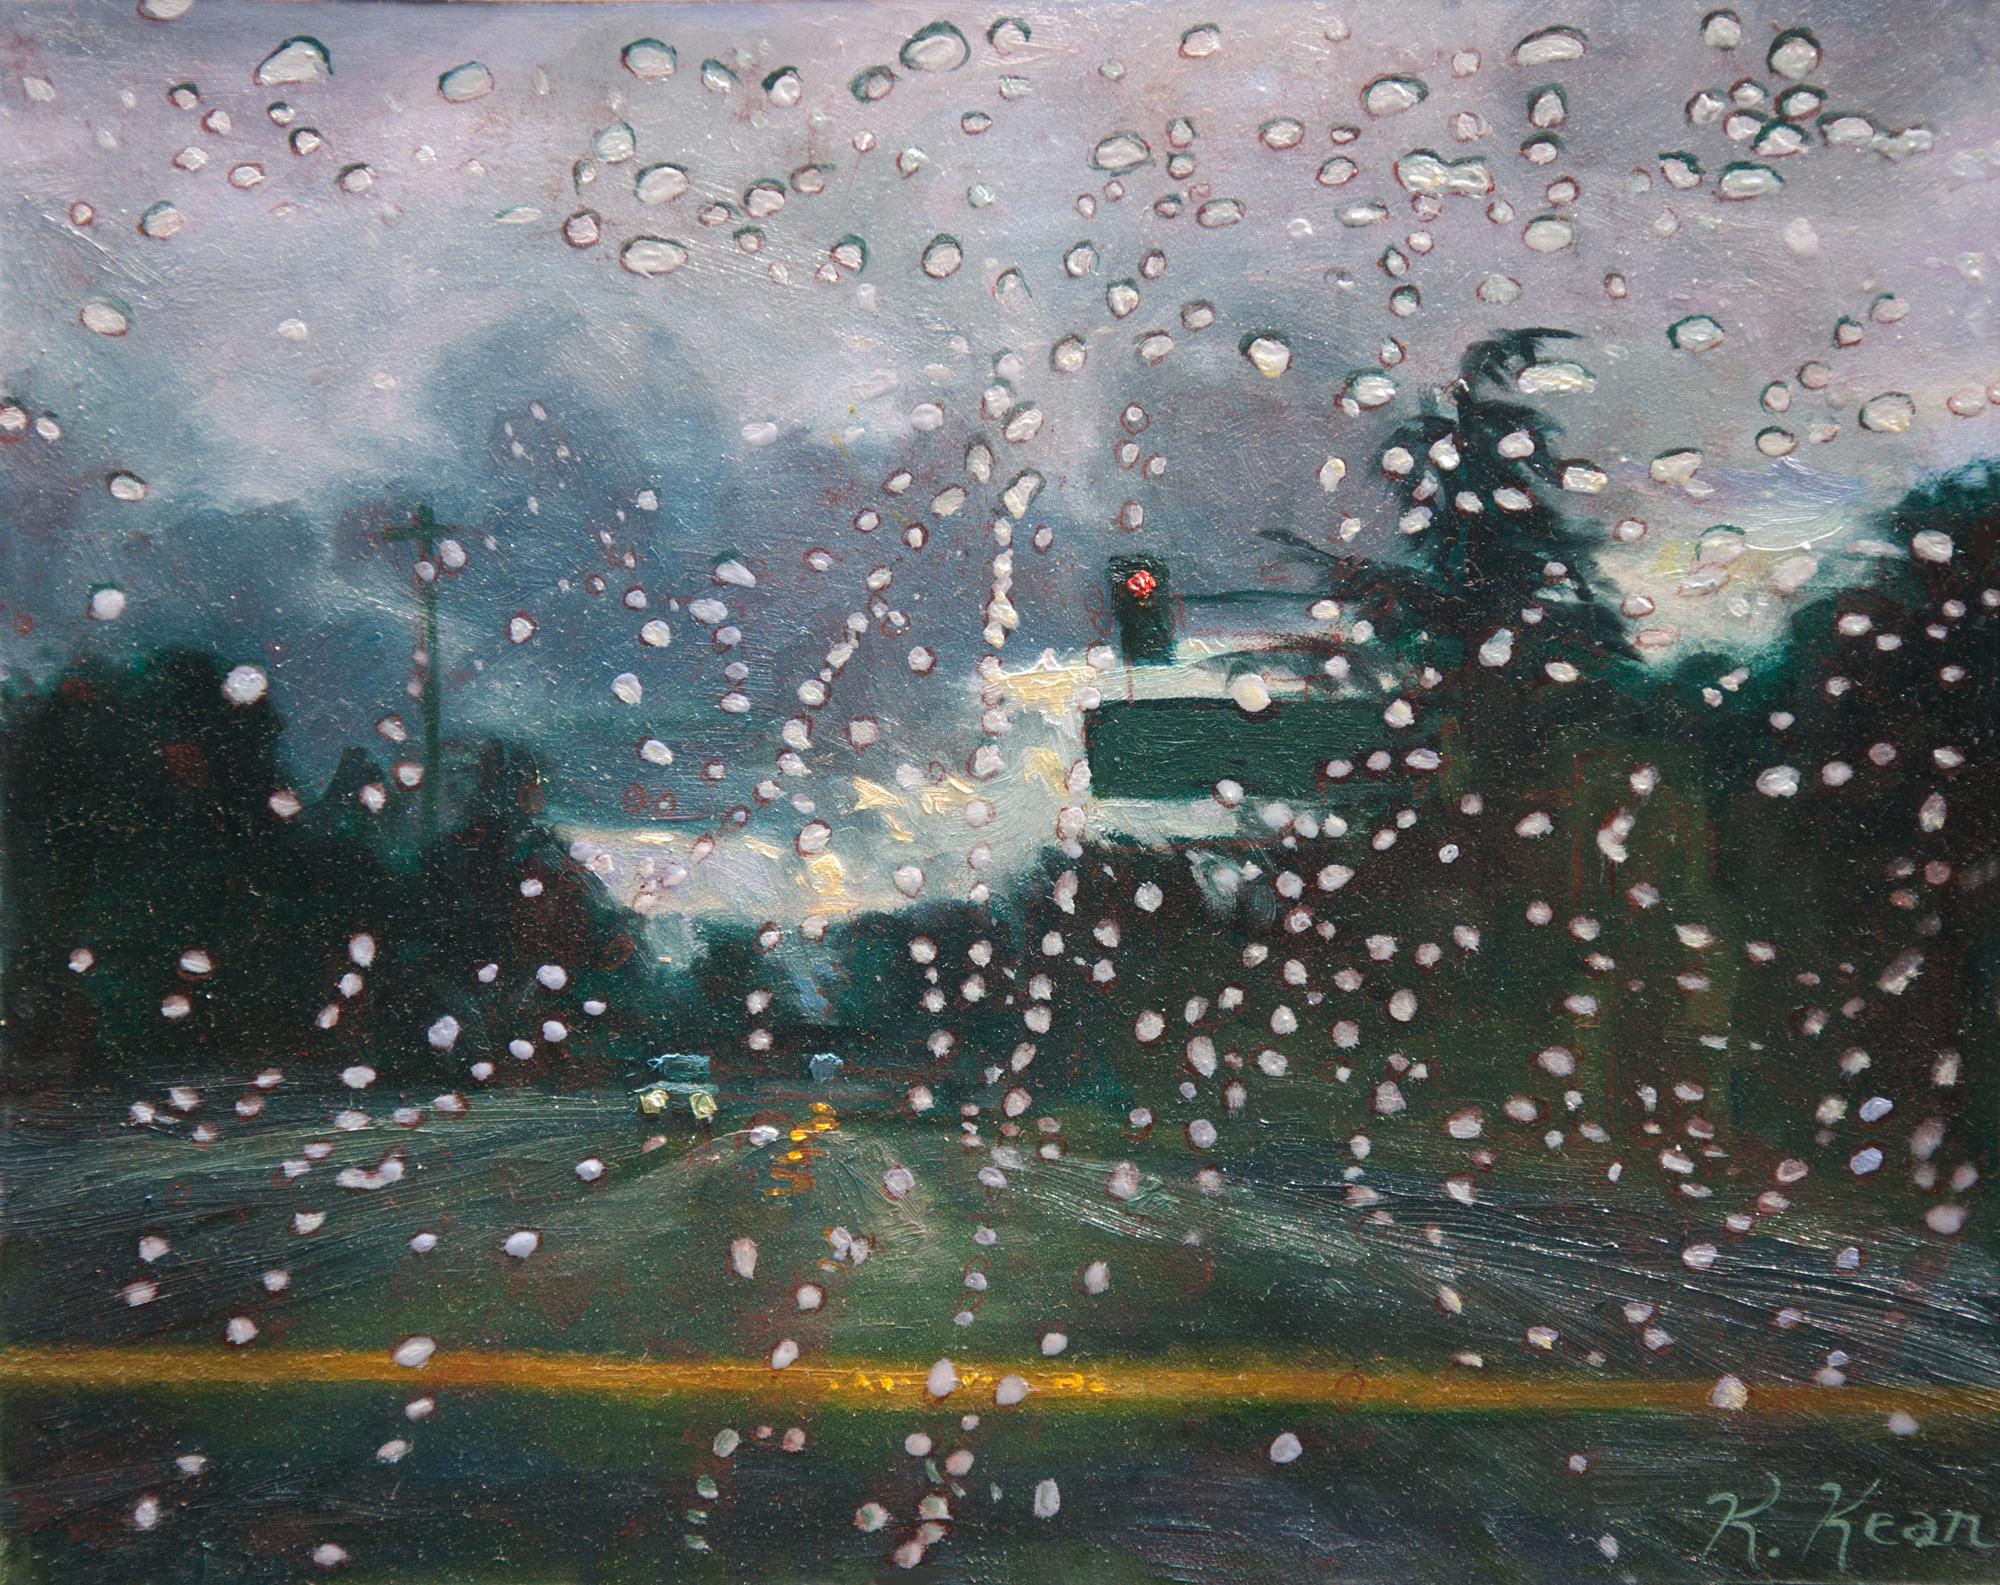 Landscape Painting Katherine Kean - Rain Dot 2, paysage urbain contemporain